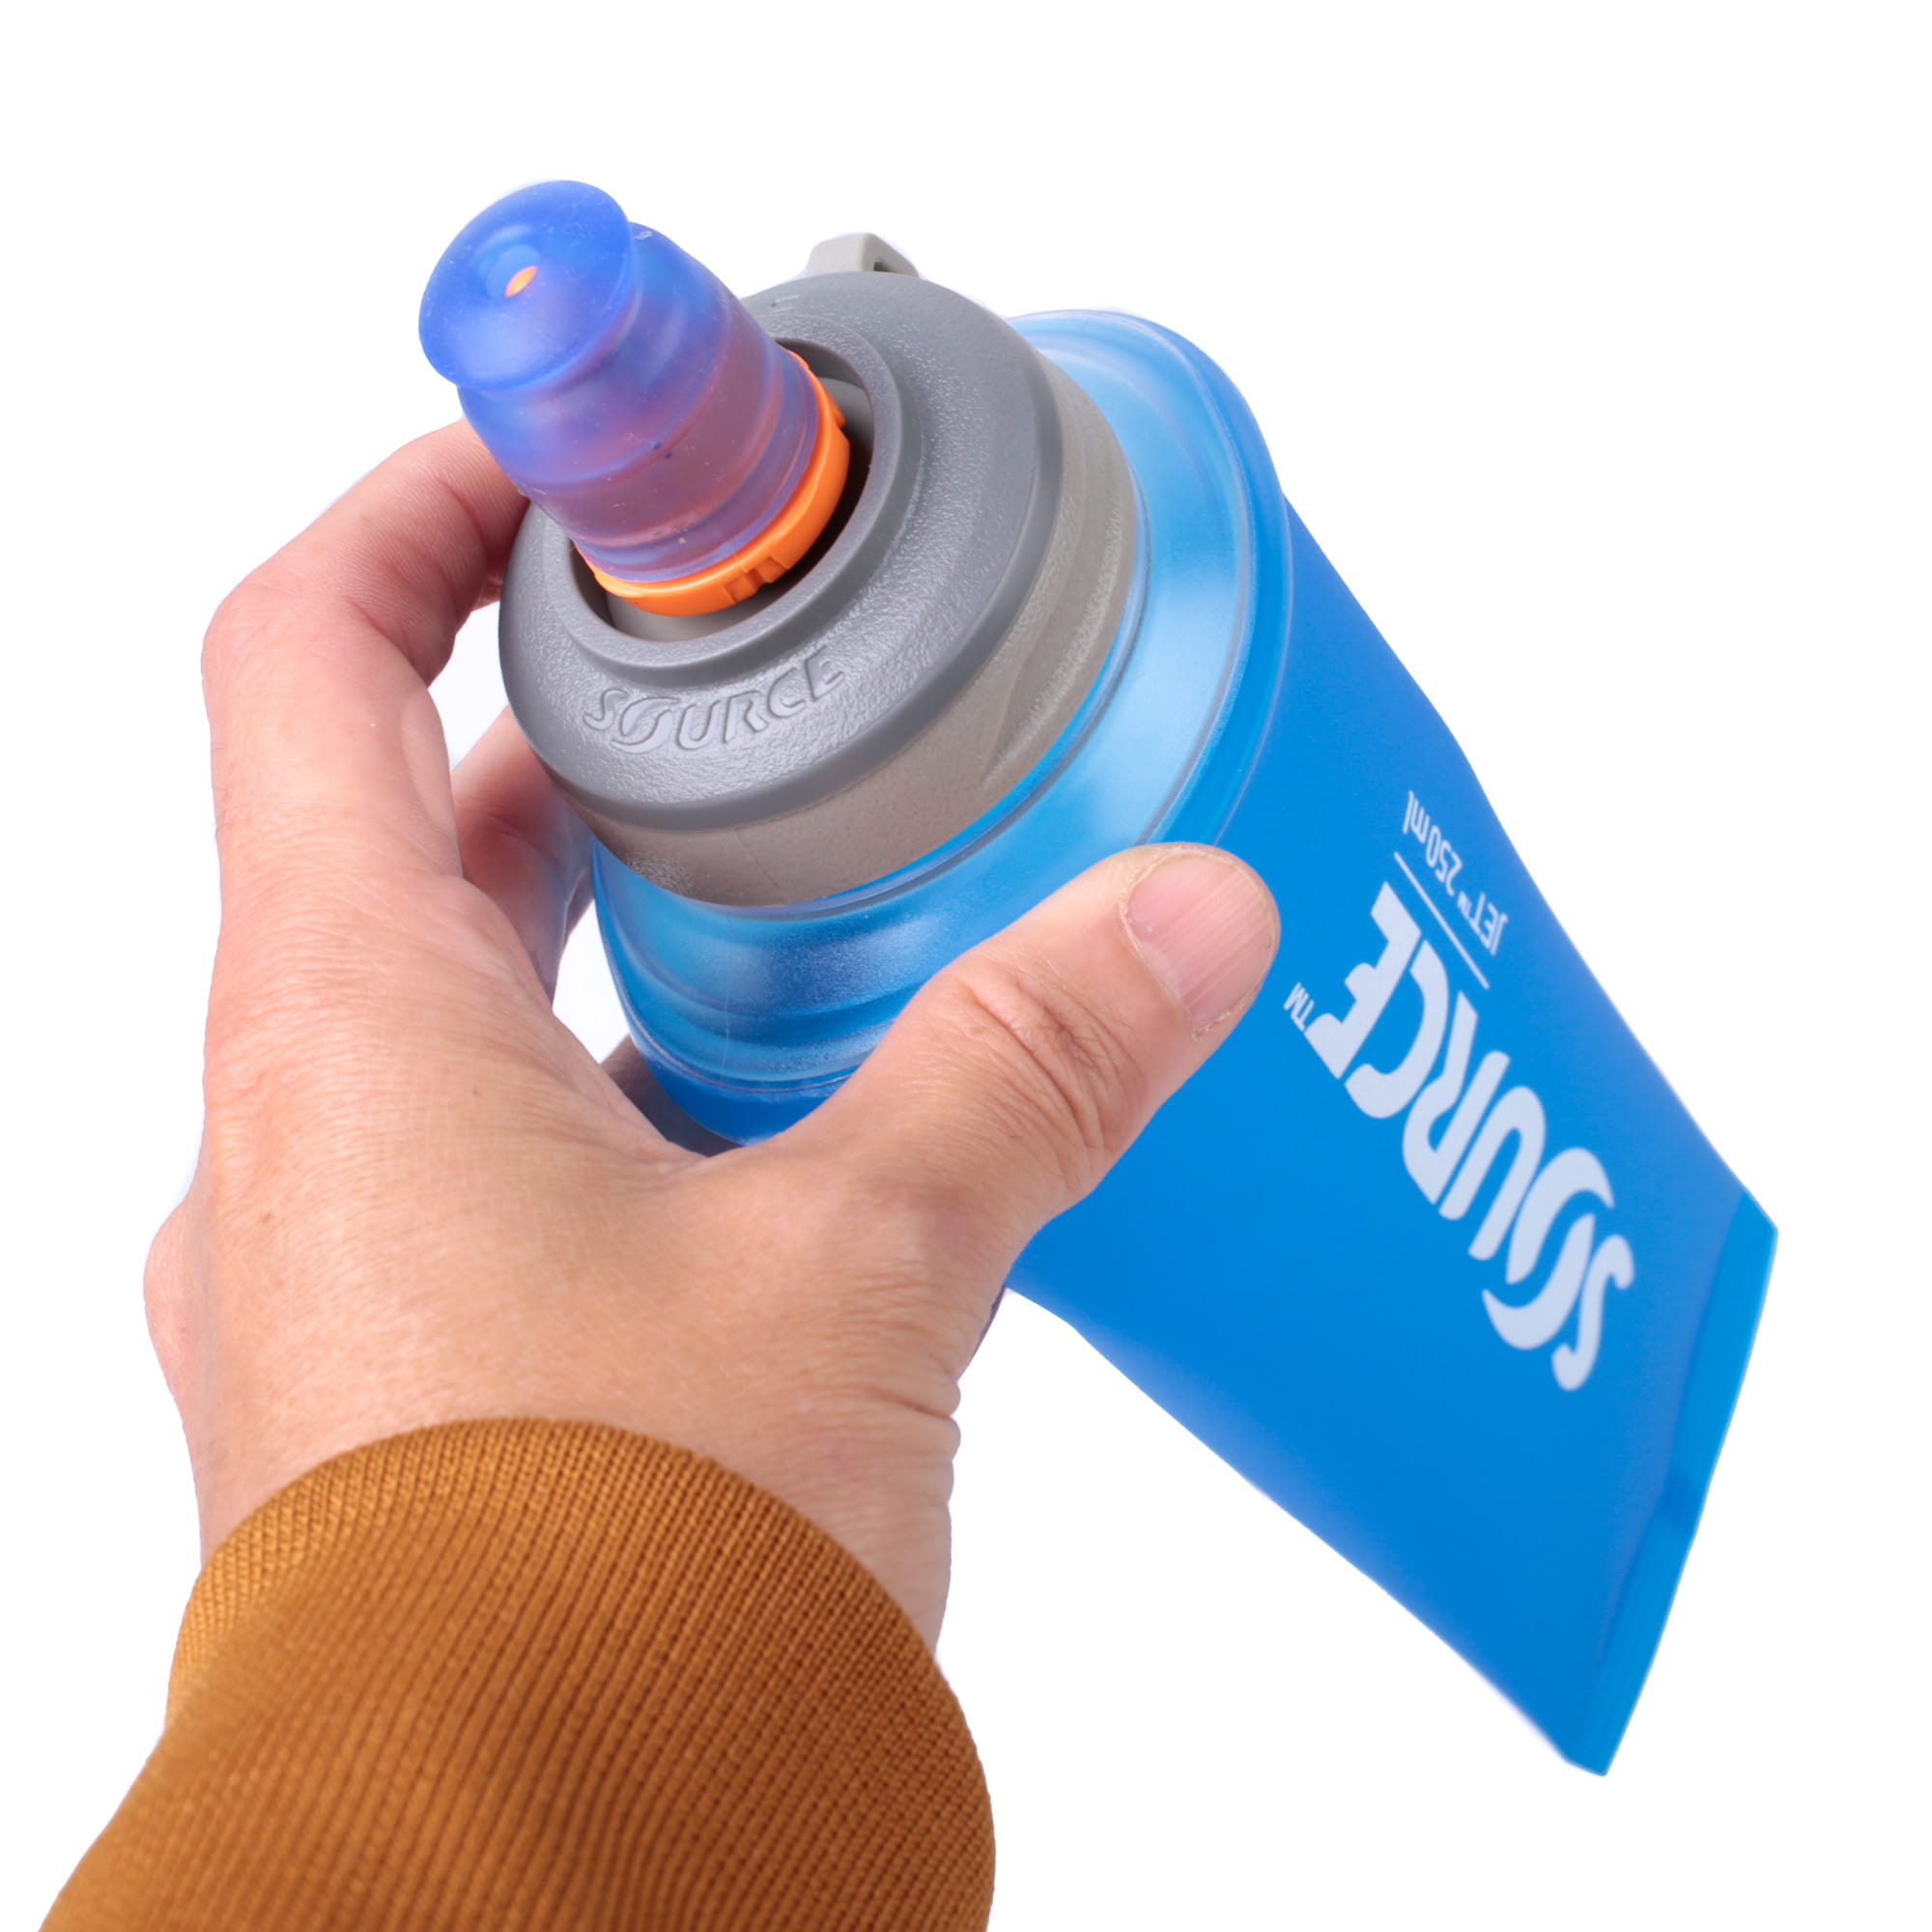 SOURCE Jet faltbare Trinkflasche ohne PVC und BPA - 0,5 L, Blau